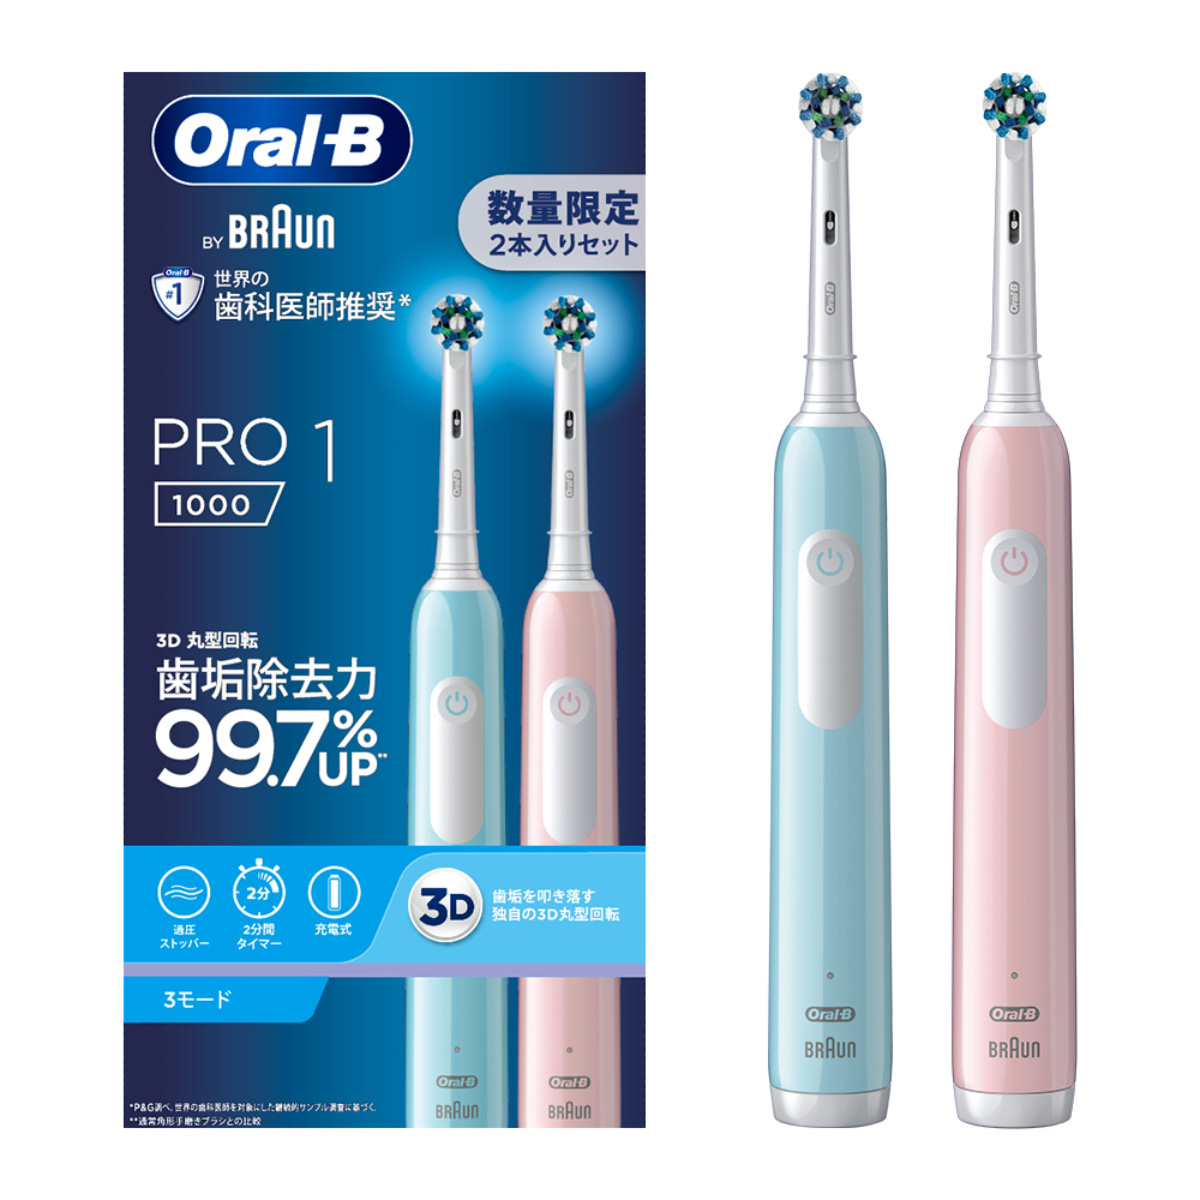 ひかりＴＶショッピング Oral-B by BRAUN オーラルB 電動歯ブラシ PRO1 カリビアン ライトローズ 2本  D3055133CB_LR｜ブラウン